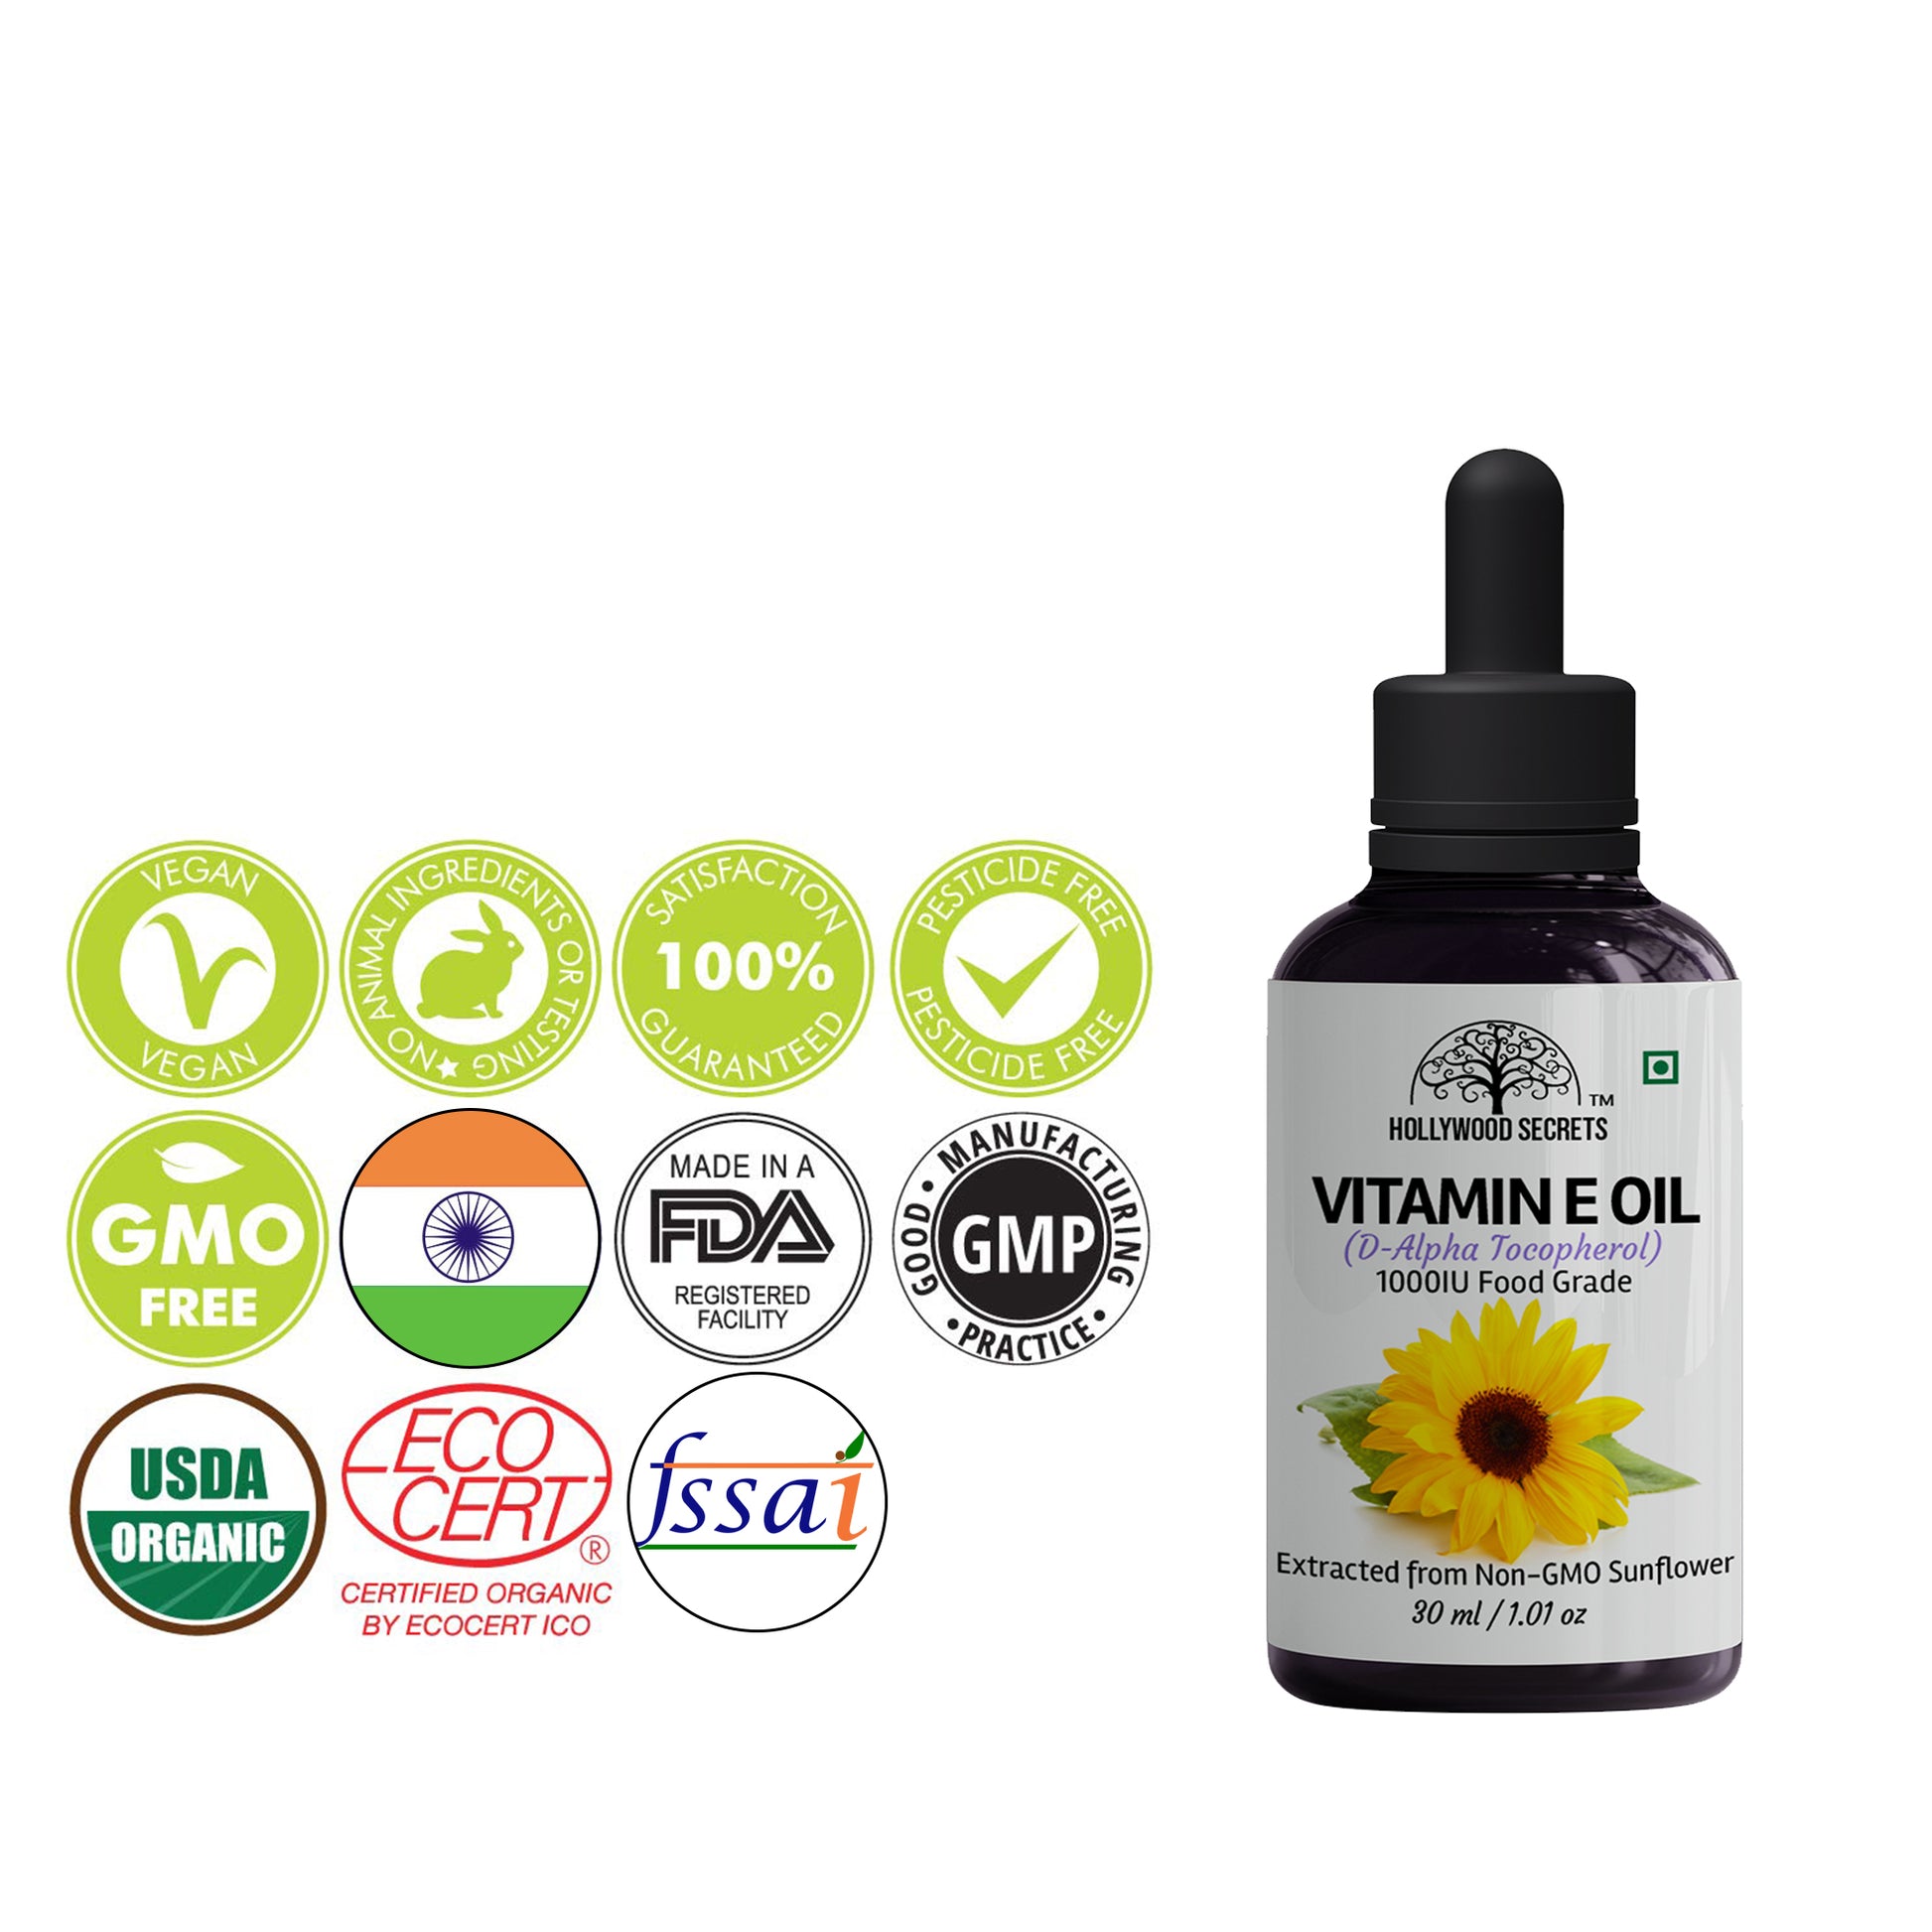 Vitamin E  Oil D-Alpha Tocopherol 1000 IU 30ml Hollywood Secrets